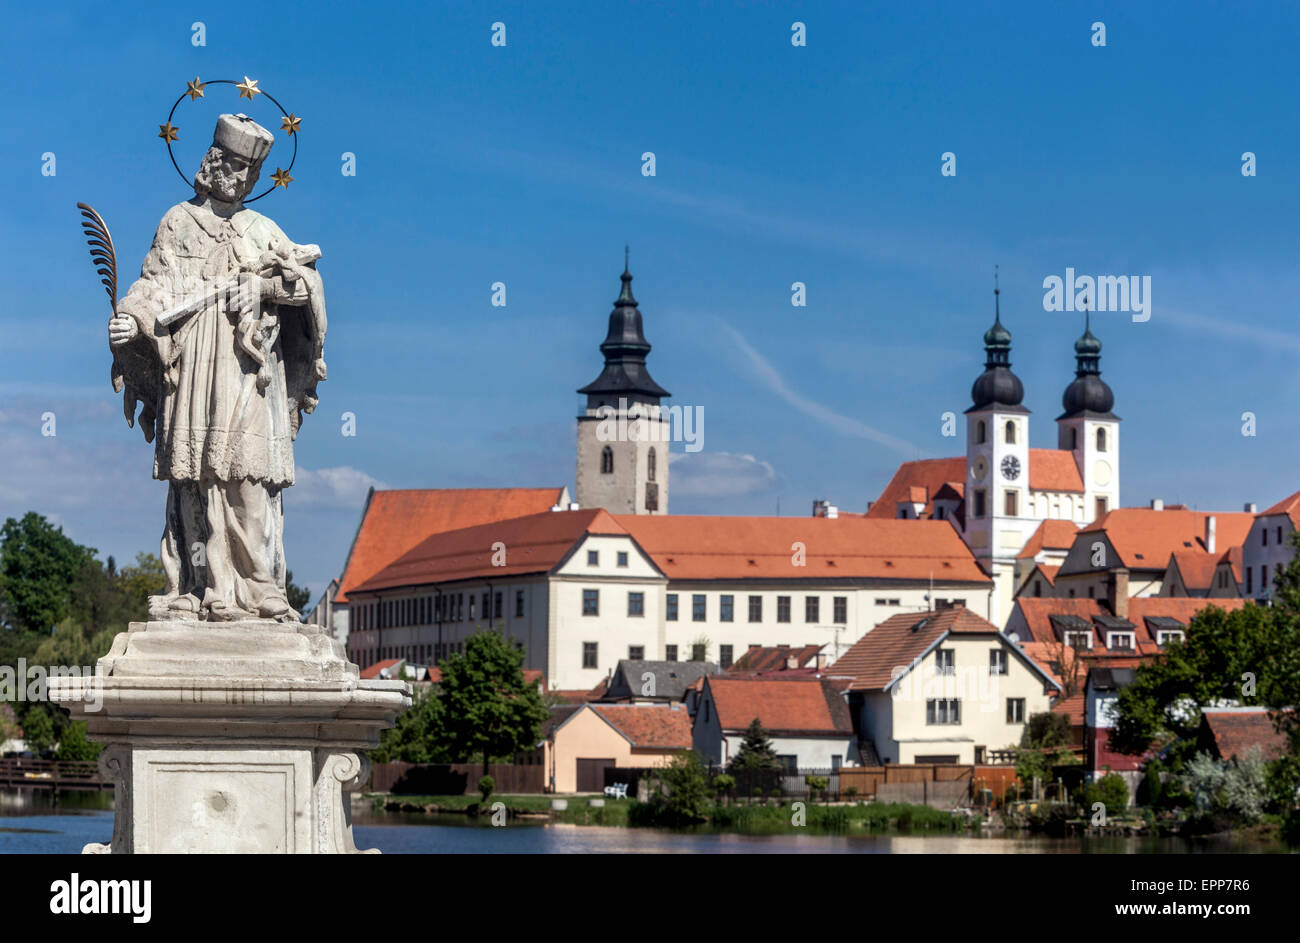 Telc Tschechische Republik Europa Weltkulturerbe Tschechische Stadt barocke Statue des Heiligen Johannes von Nepomuk im Vordergrund Stockfoto